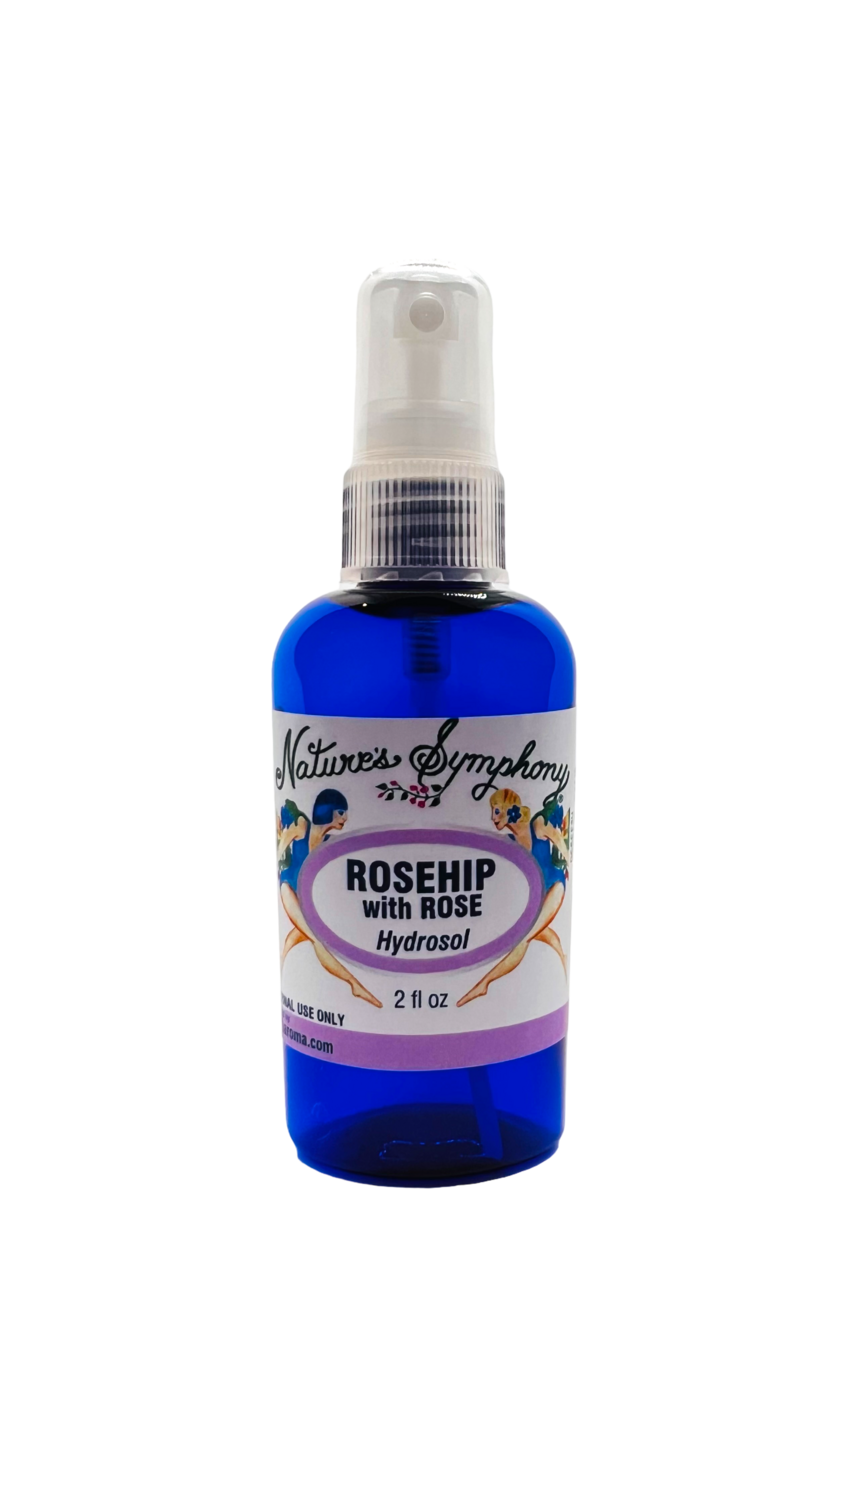 Rosehip with Rose Hydrosol | 2 fl. oz (59ml)